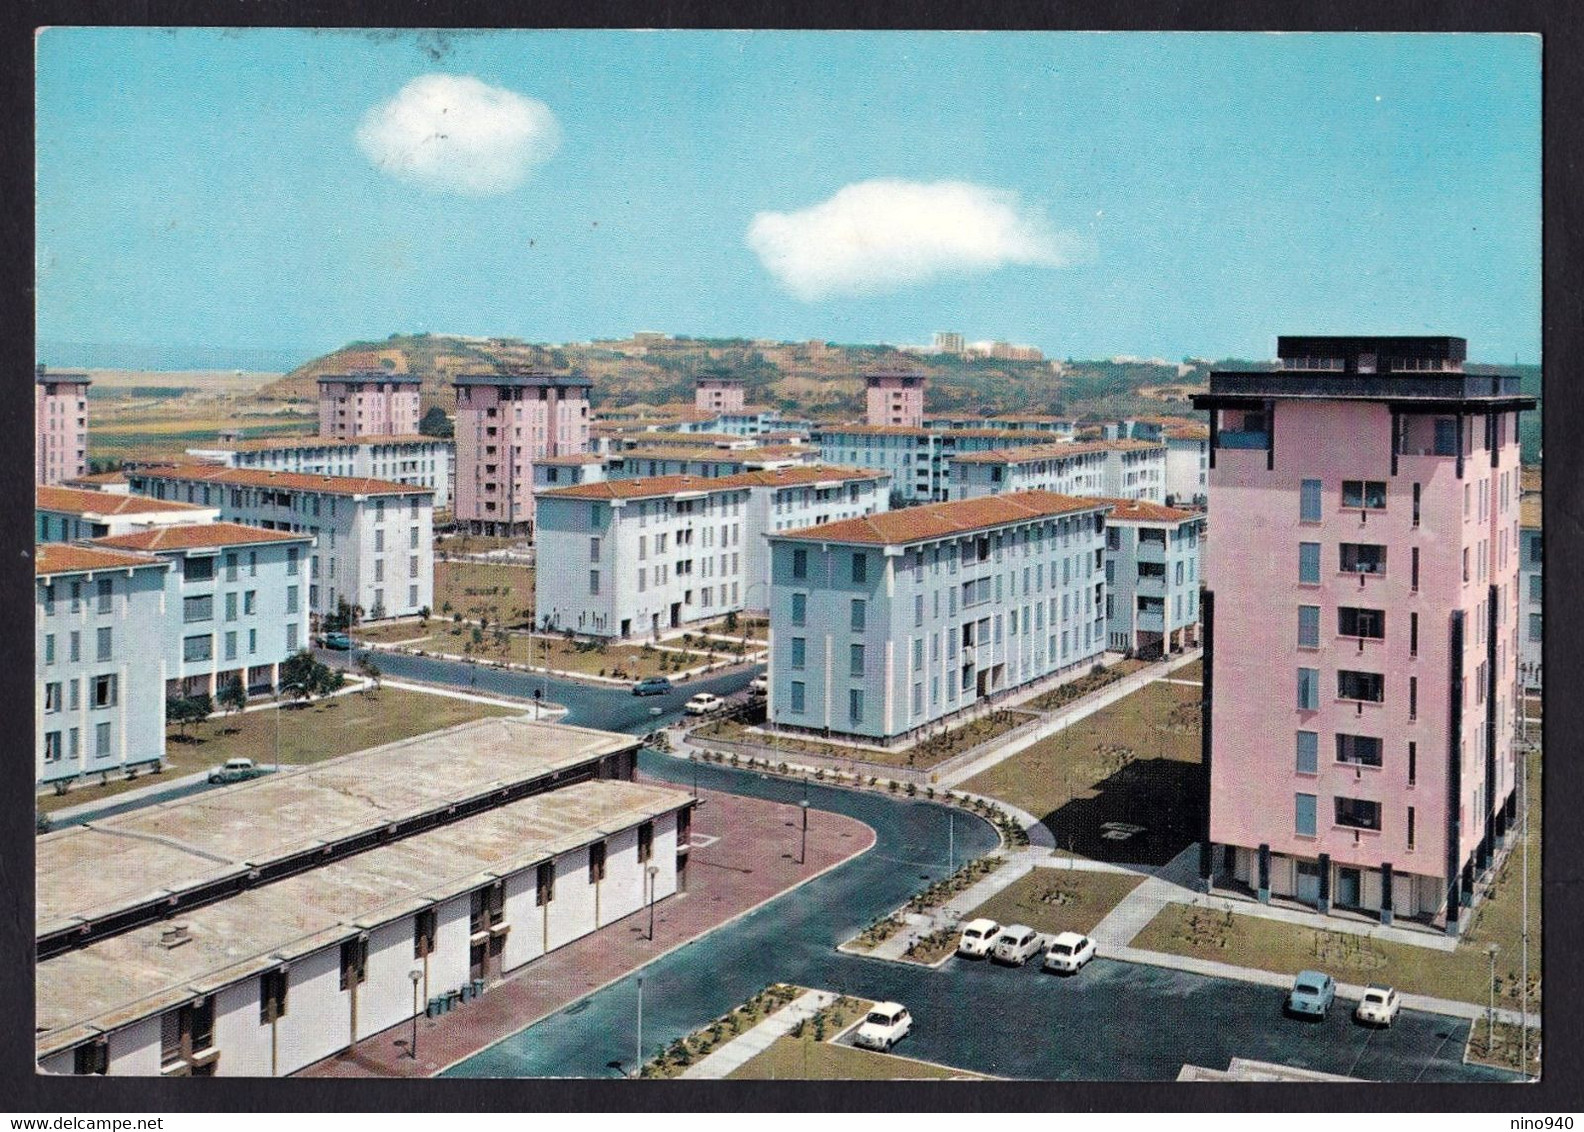 GELA (CL) - Quartiere Residenziale "ANIC Gela" - F/G - V: 1969 - Gela